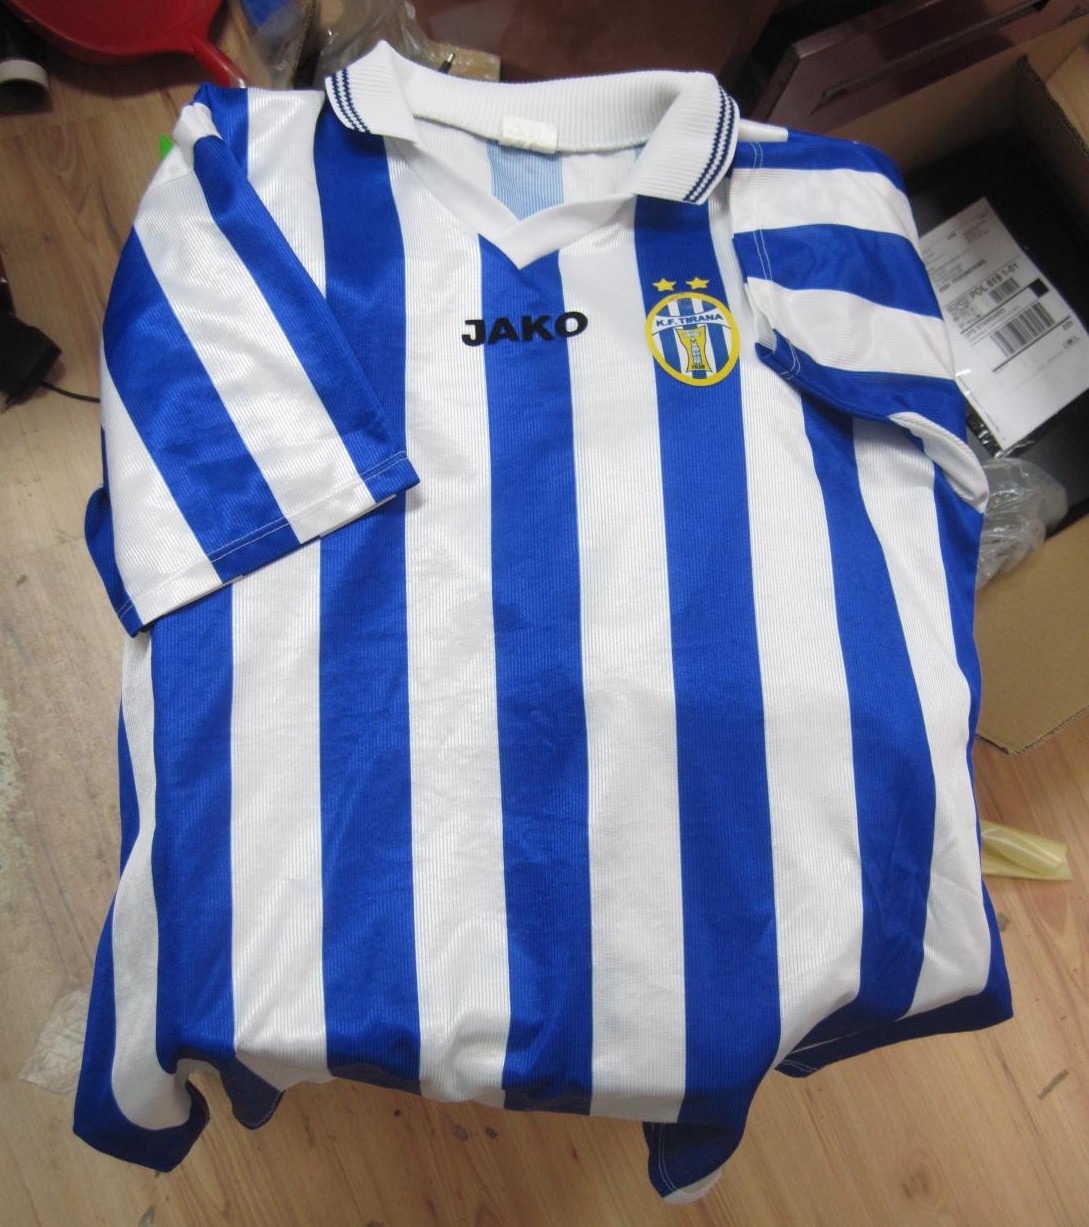 KF Tirana Home camisa de futebol 2004 - 2005. Sponsored by no sponsor